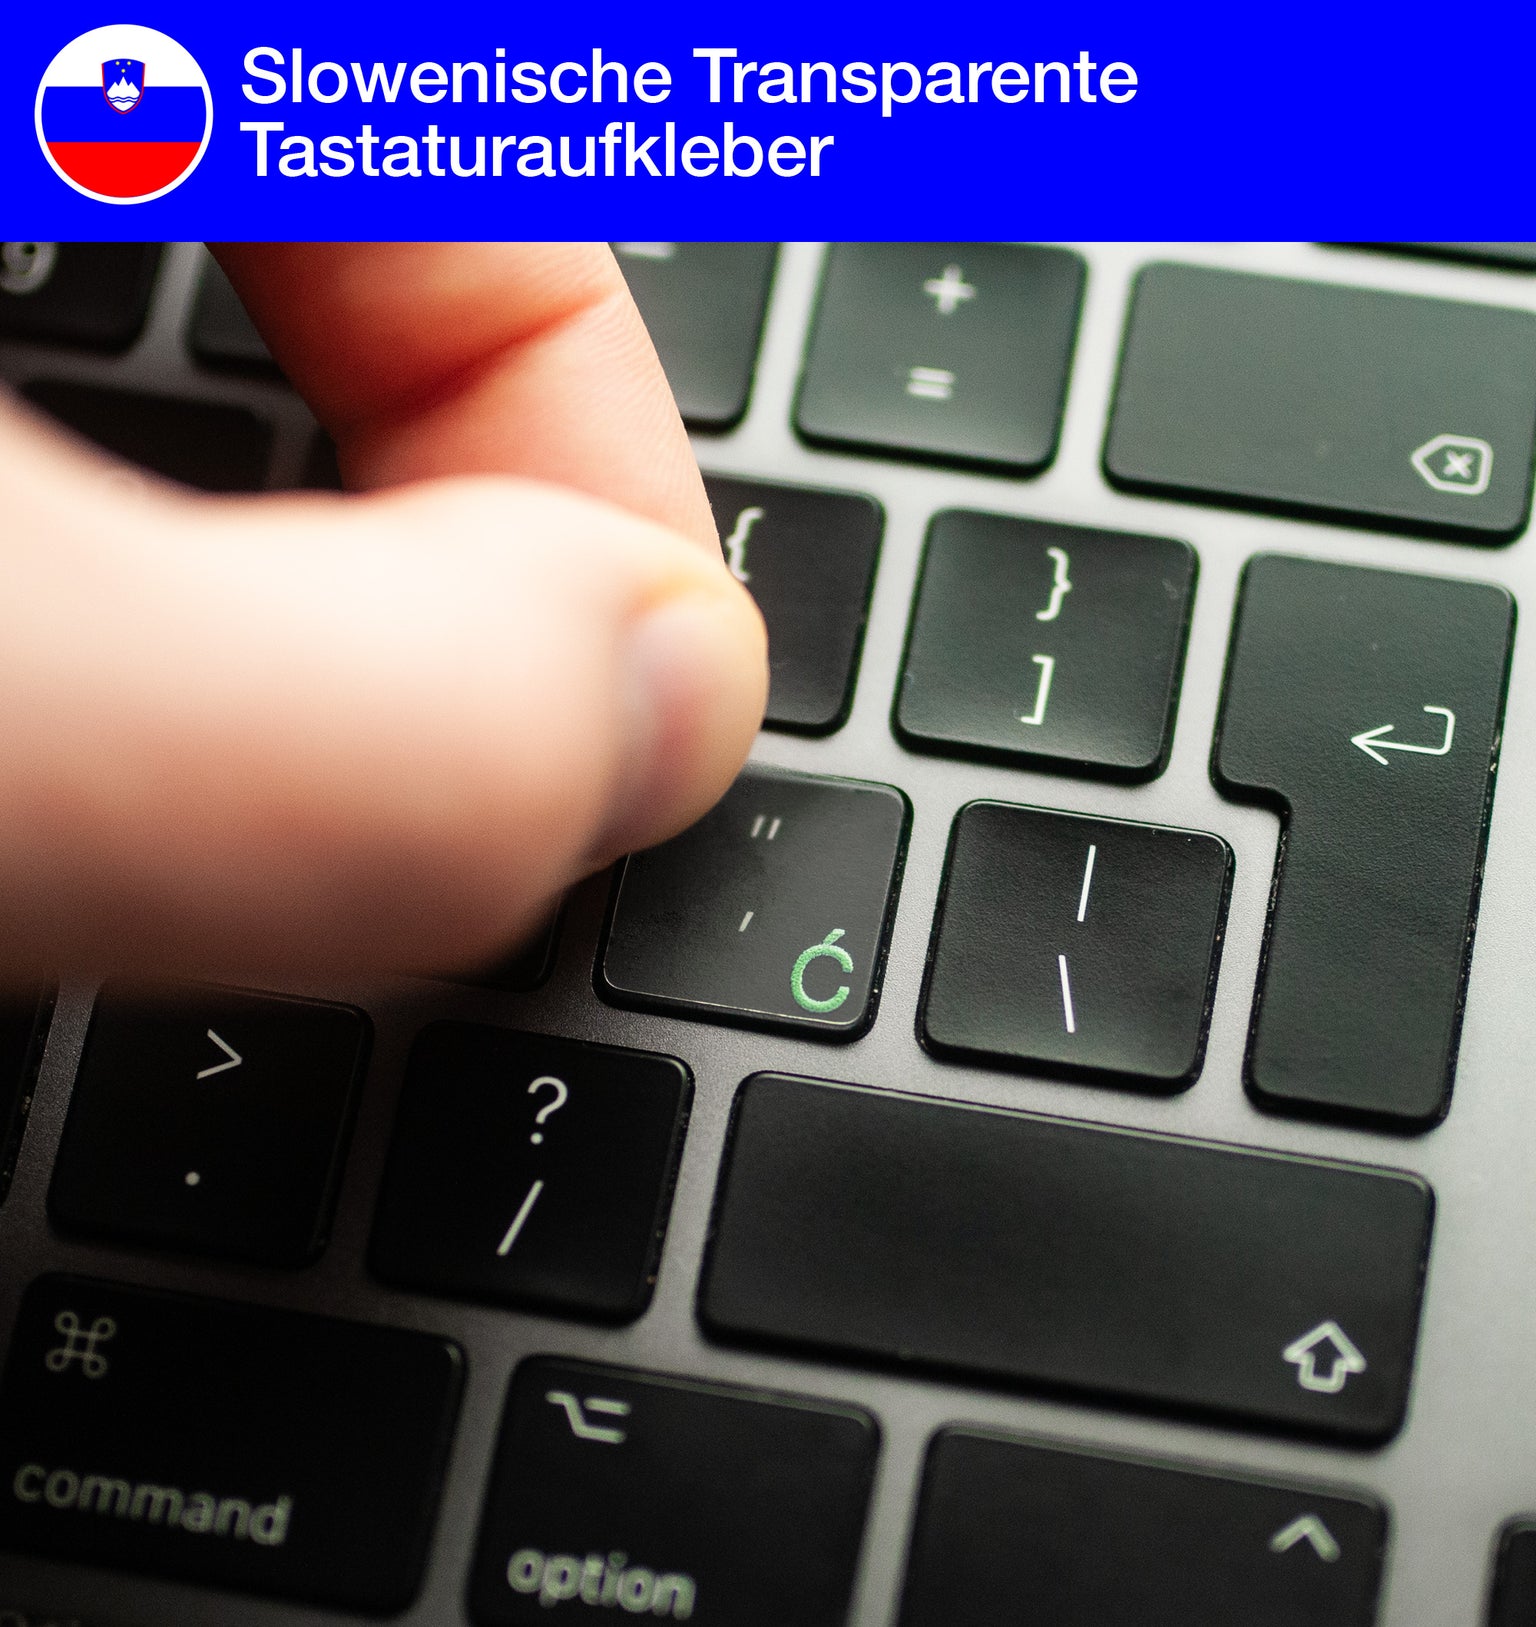 Slowenische Transparente Tastaturaufkleber